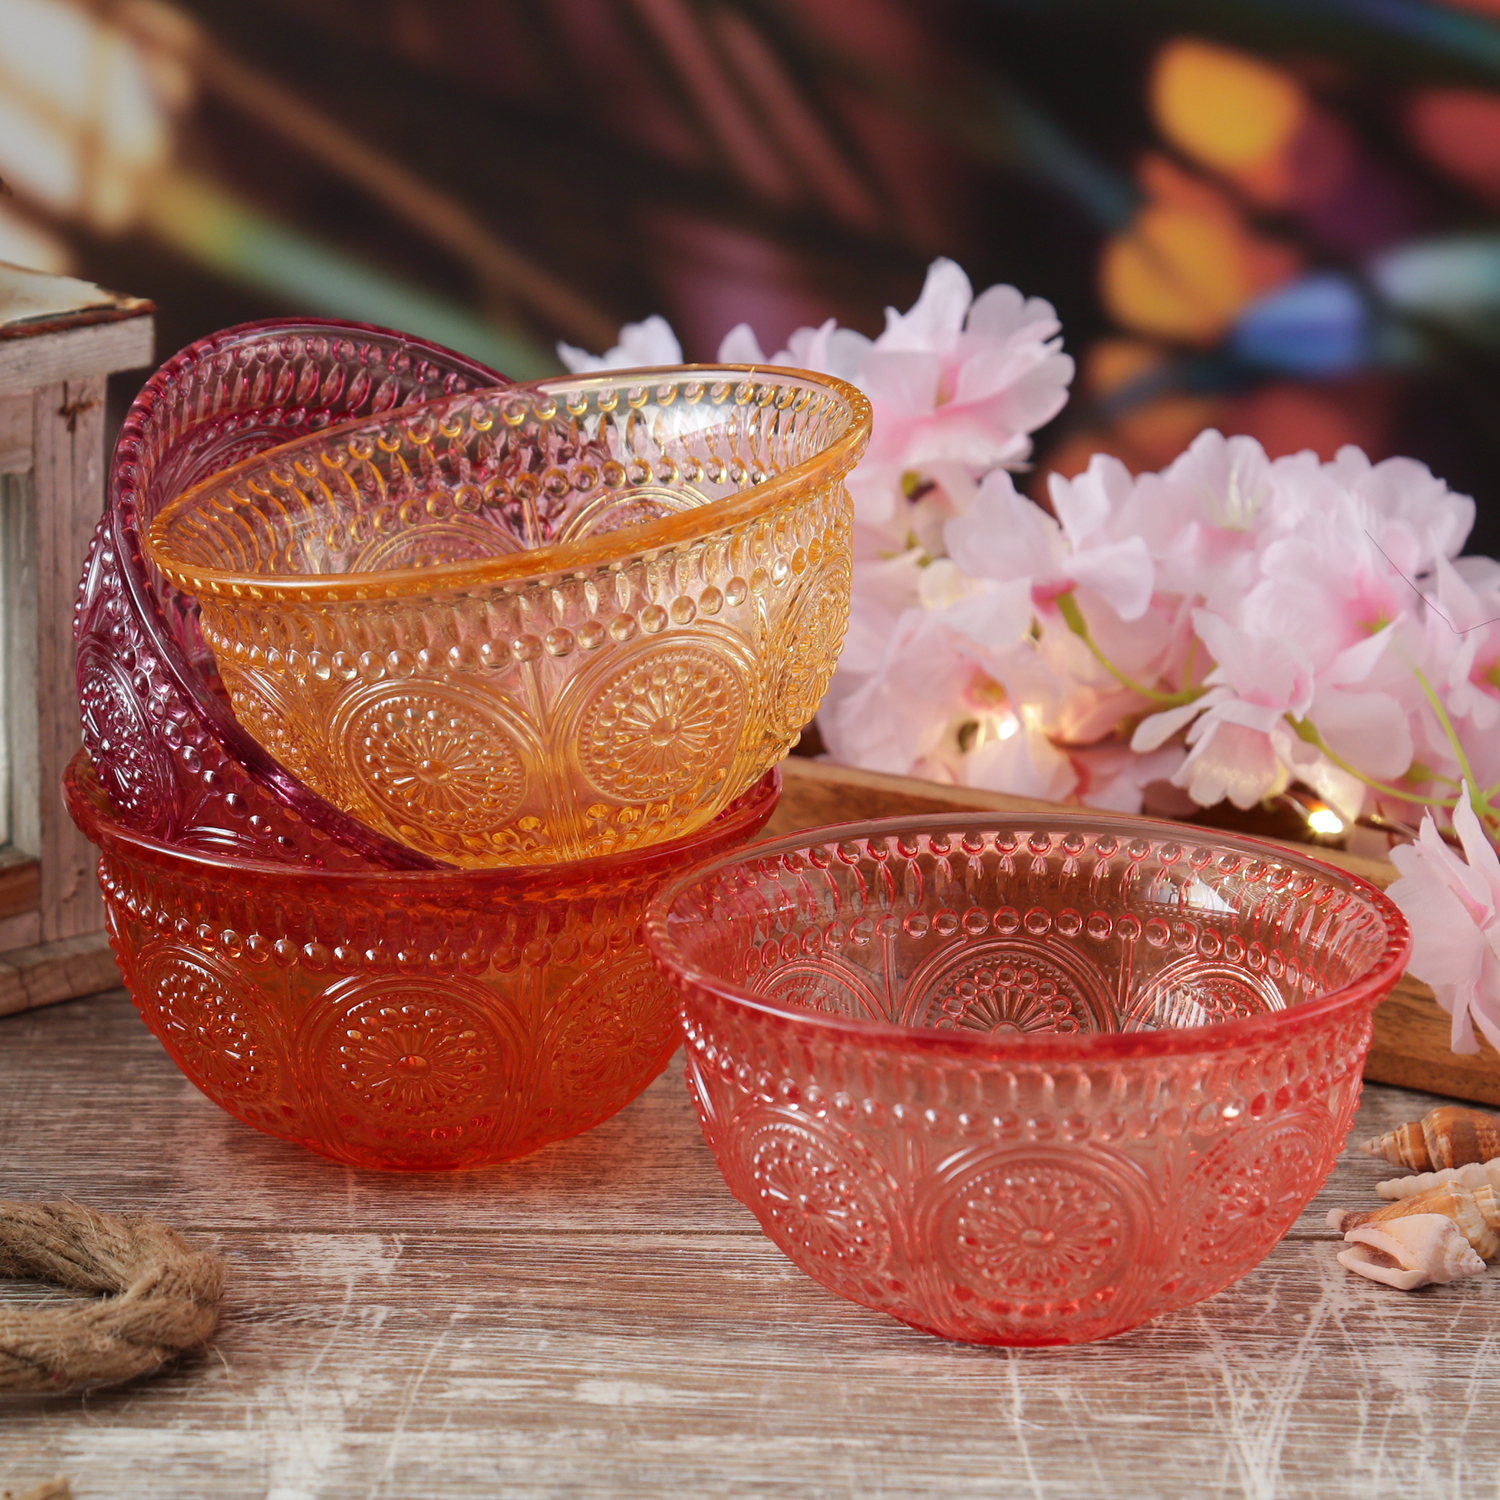 Glasschale Vintage mit Blumenmuster - Dessert/Snack Schüssel - D: 12,7cm - 210ml - Bohostil - orange